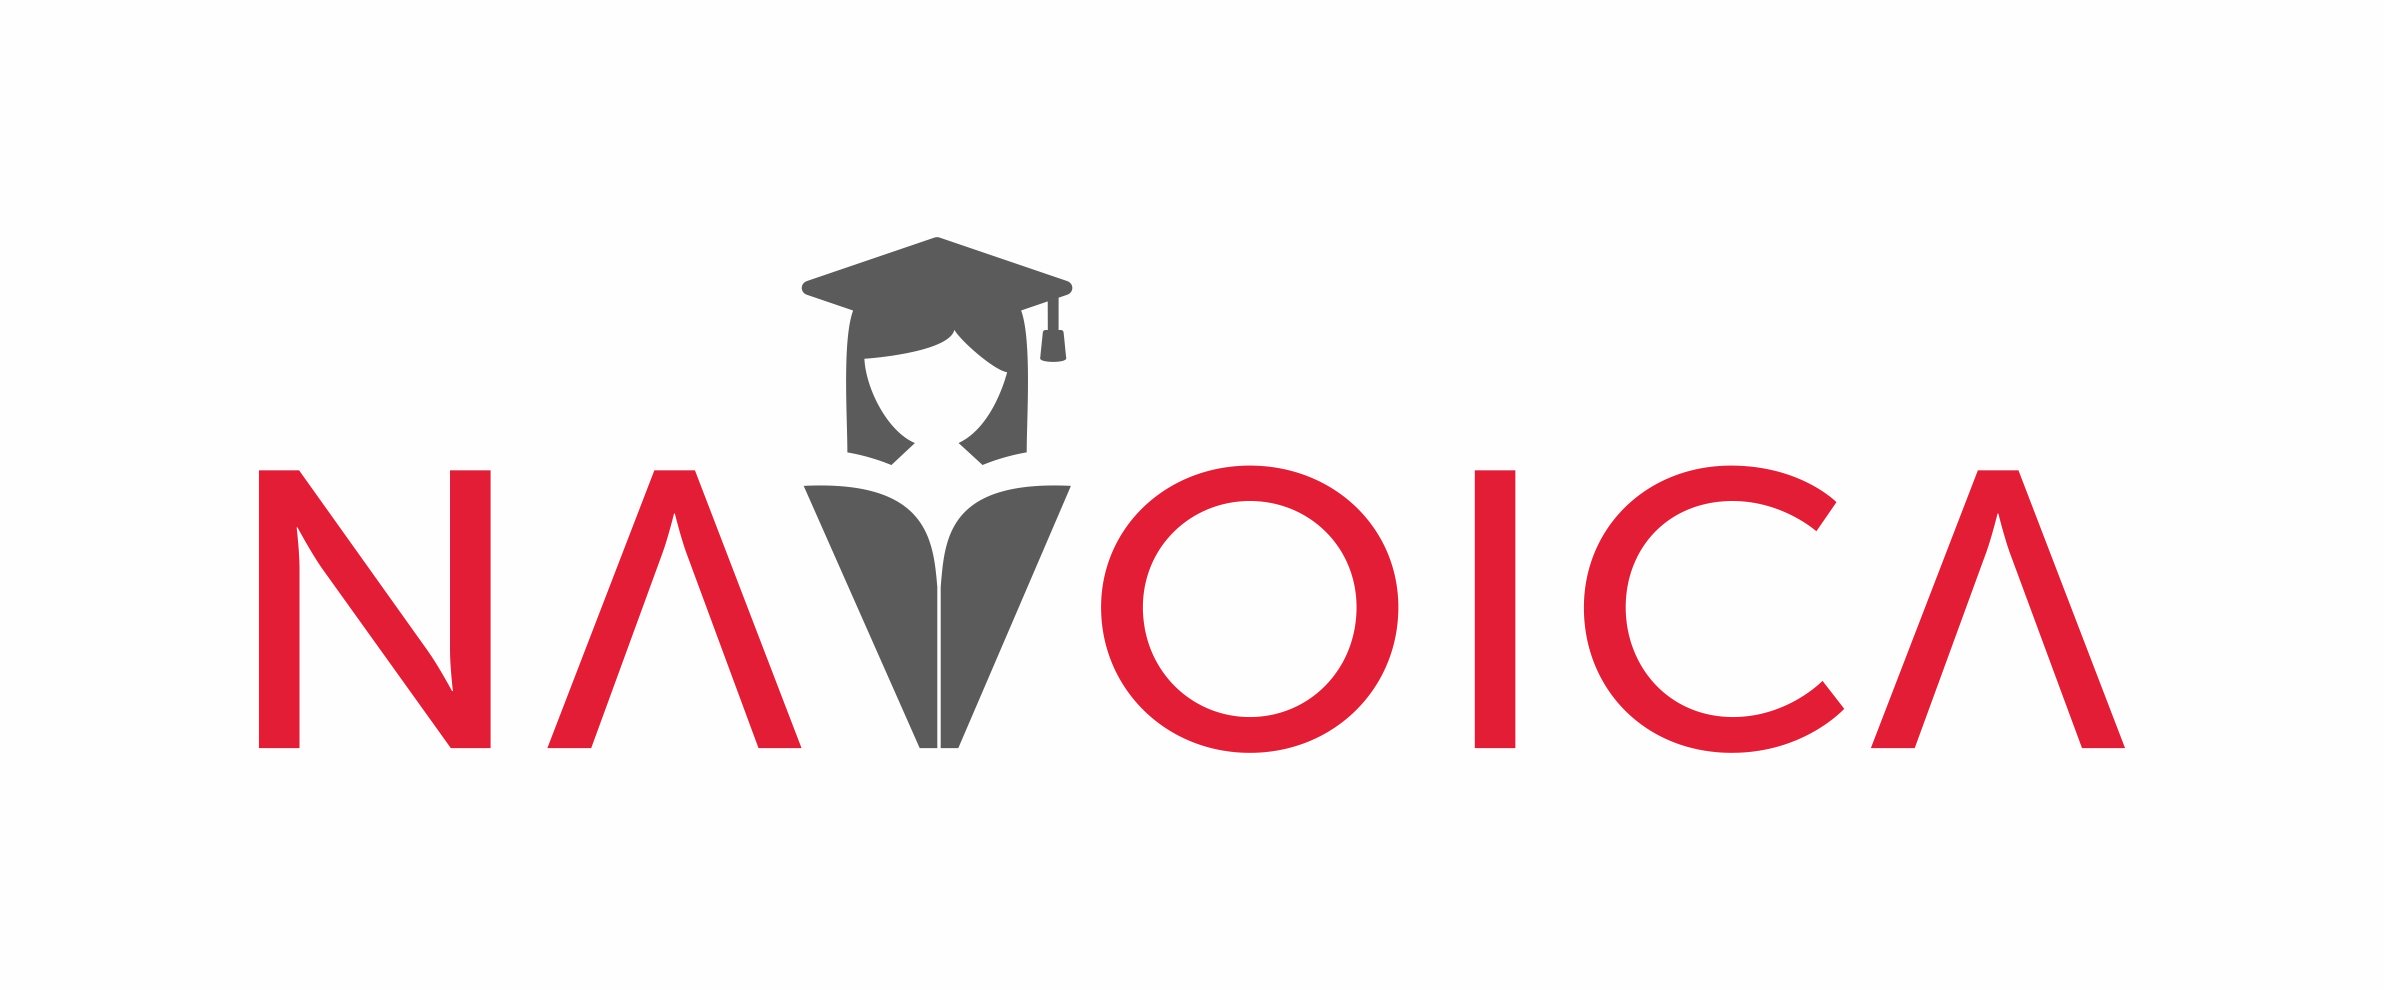 Navoica.pl – Platforma edukacyjna